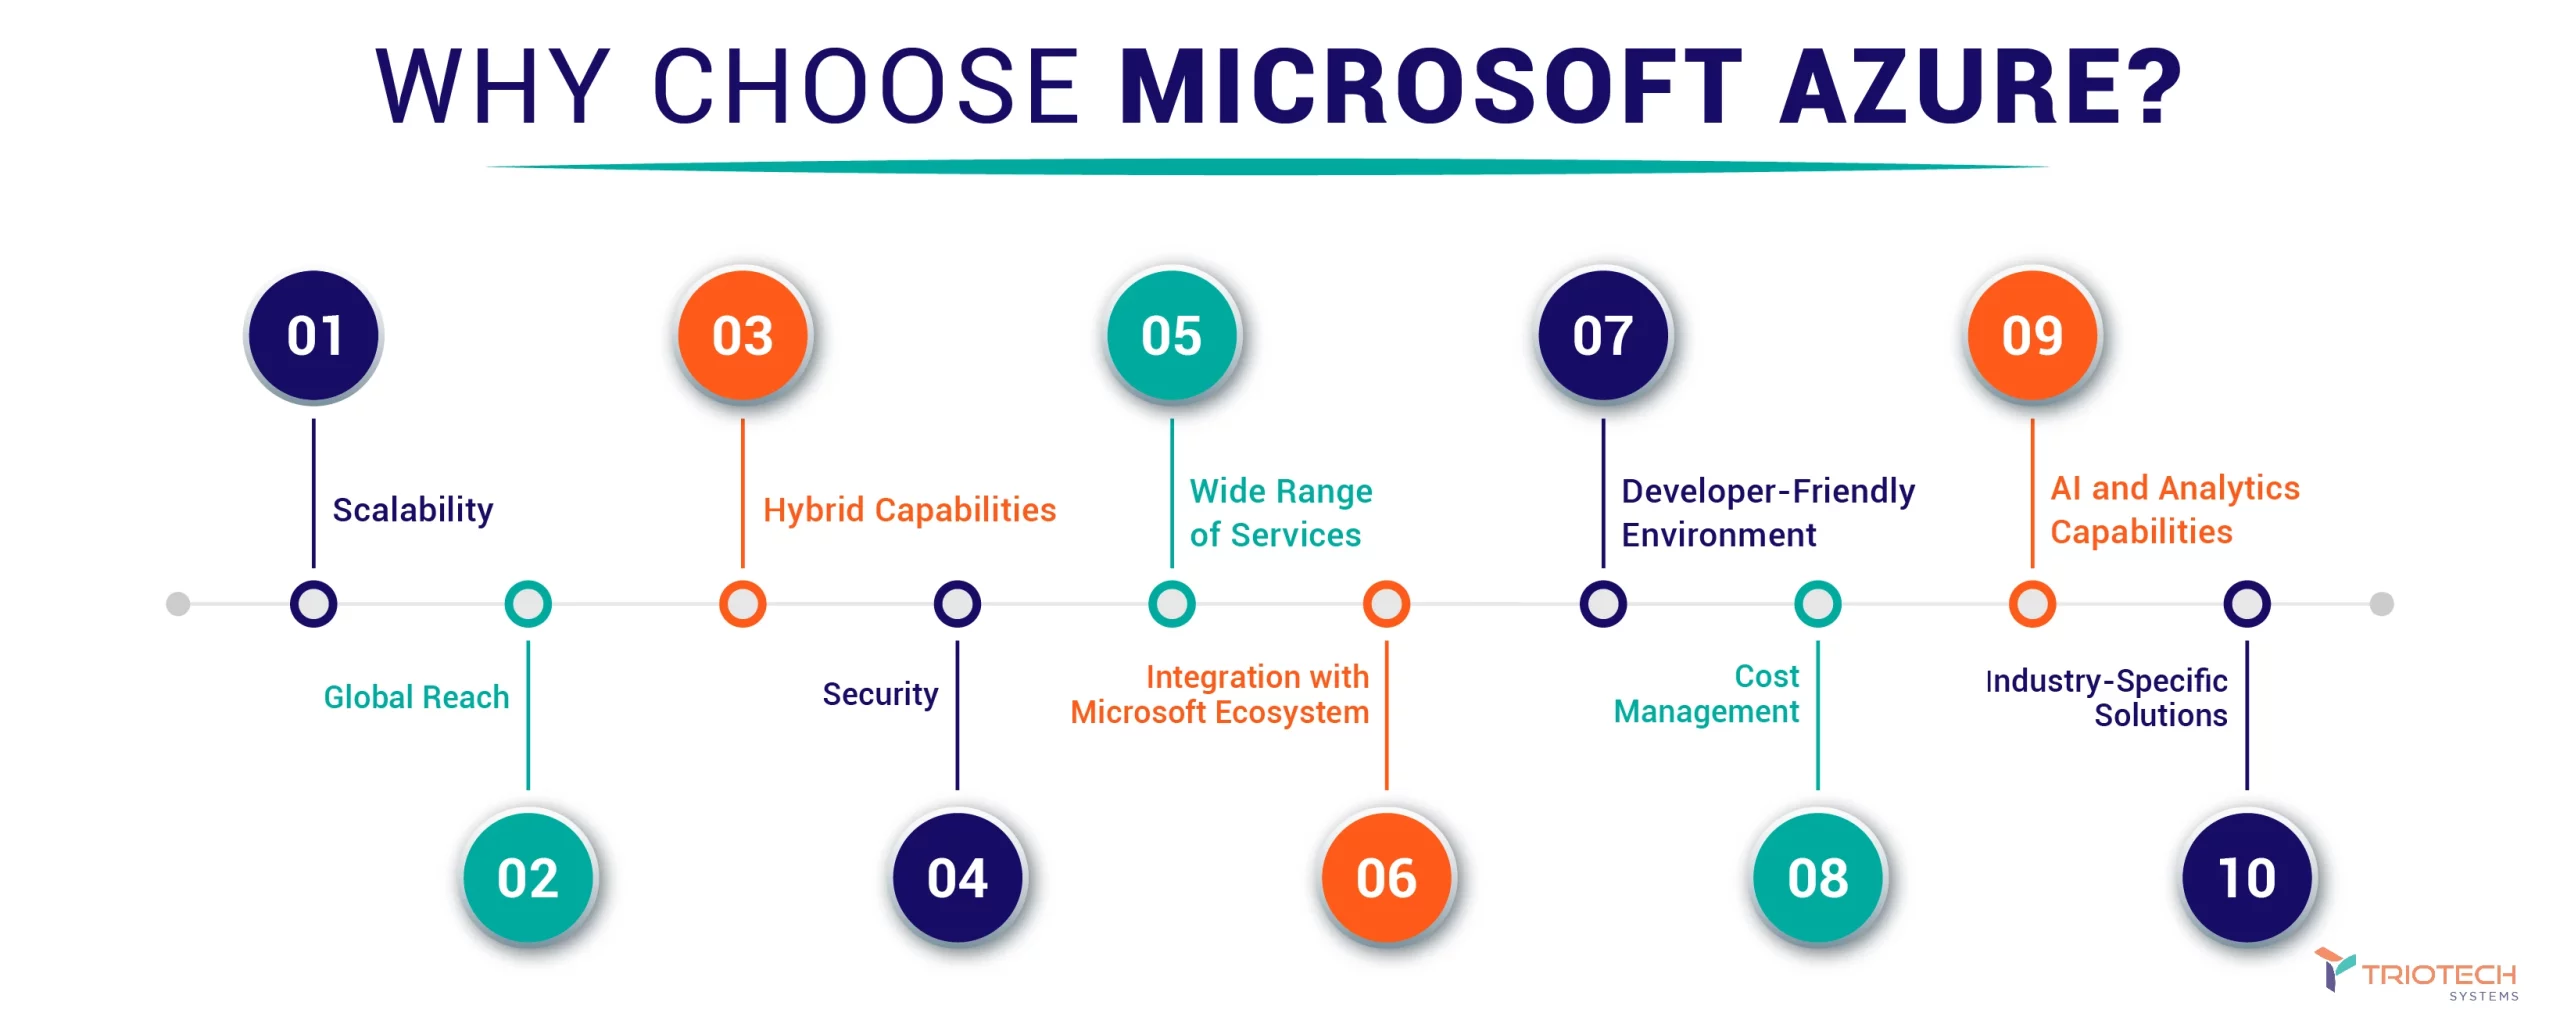 Why Choose Microsoft Azure?